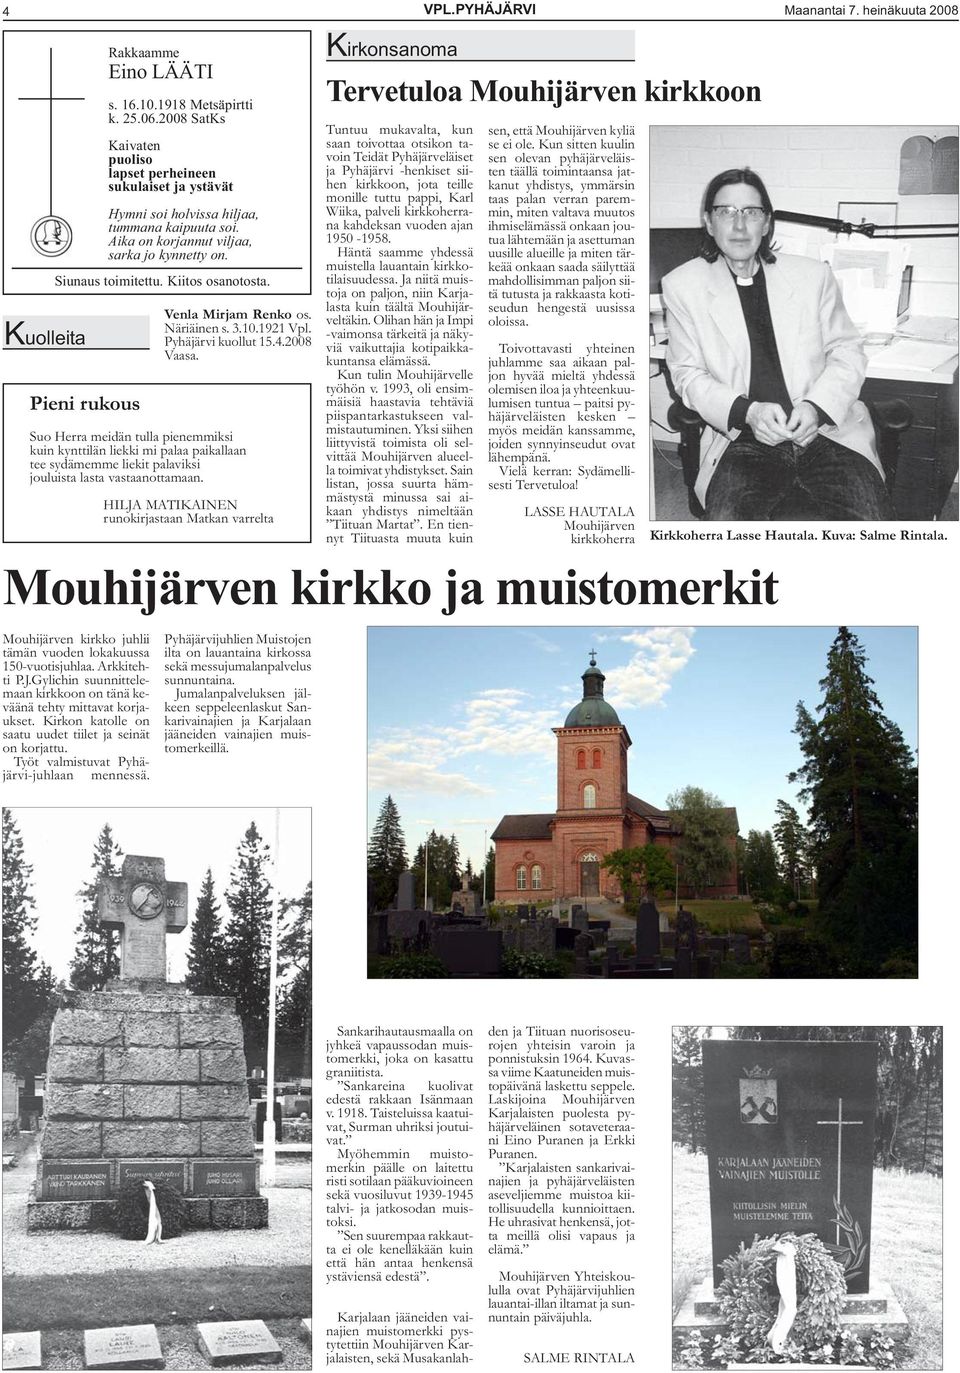 Kiitos osanotosta. Pieni rukous Mouhijärven kirkko juhlii tämän vuoden lokakuussa 150-vuotisjuhlaa. Arkkitehti P.J.Gylichin suunnittelemaan kirkkoon on tänä keväänä tehty mittavat korjaukset.